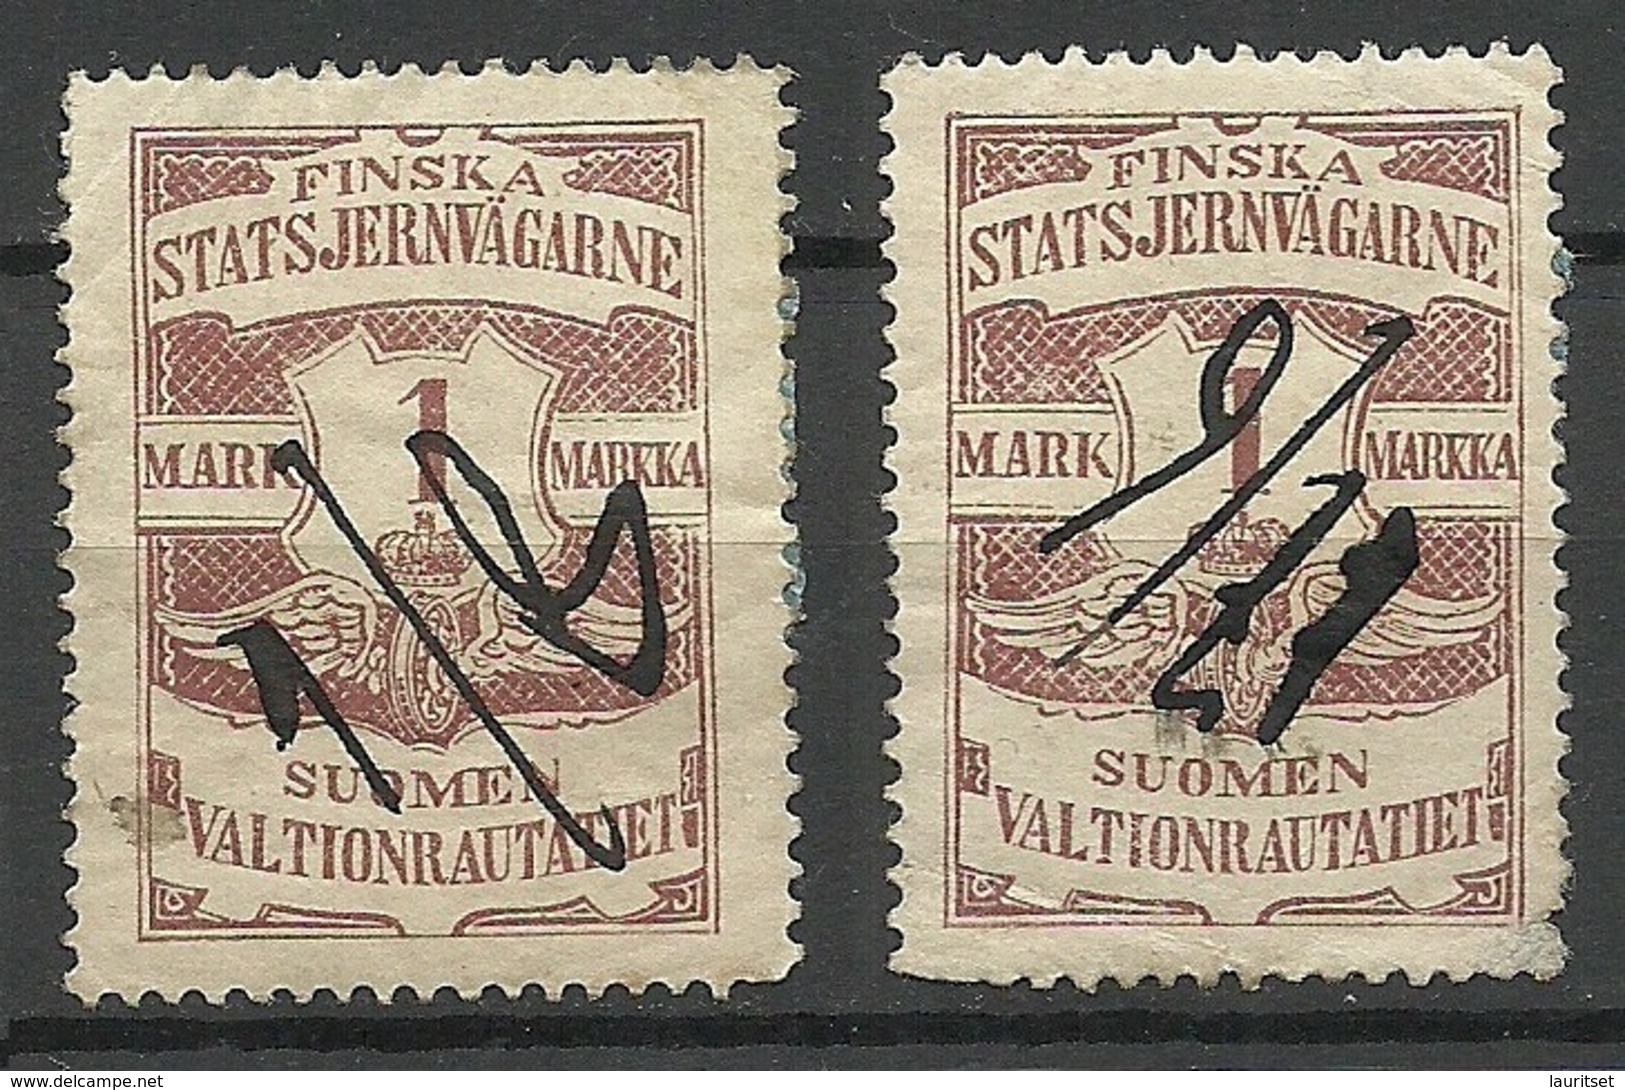 FINLAND FINNLAND 1903 Railway Stamp, 2 Exemplares, O - Paketmarken